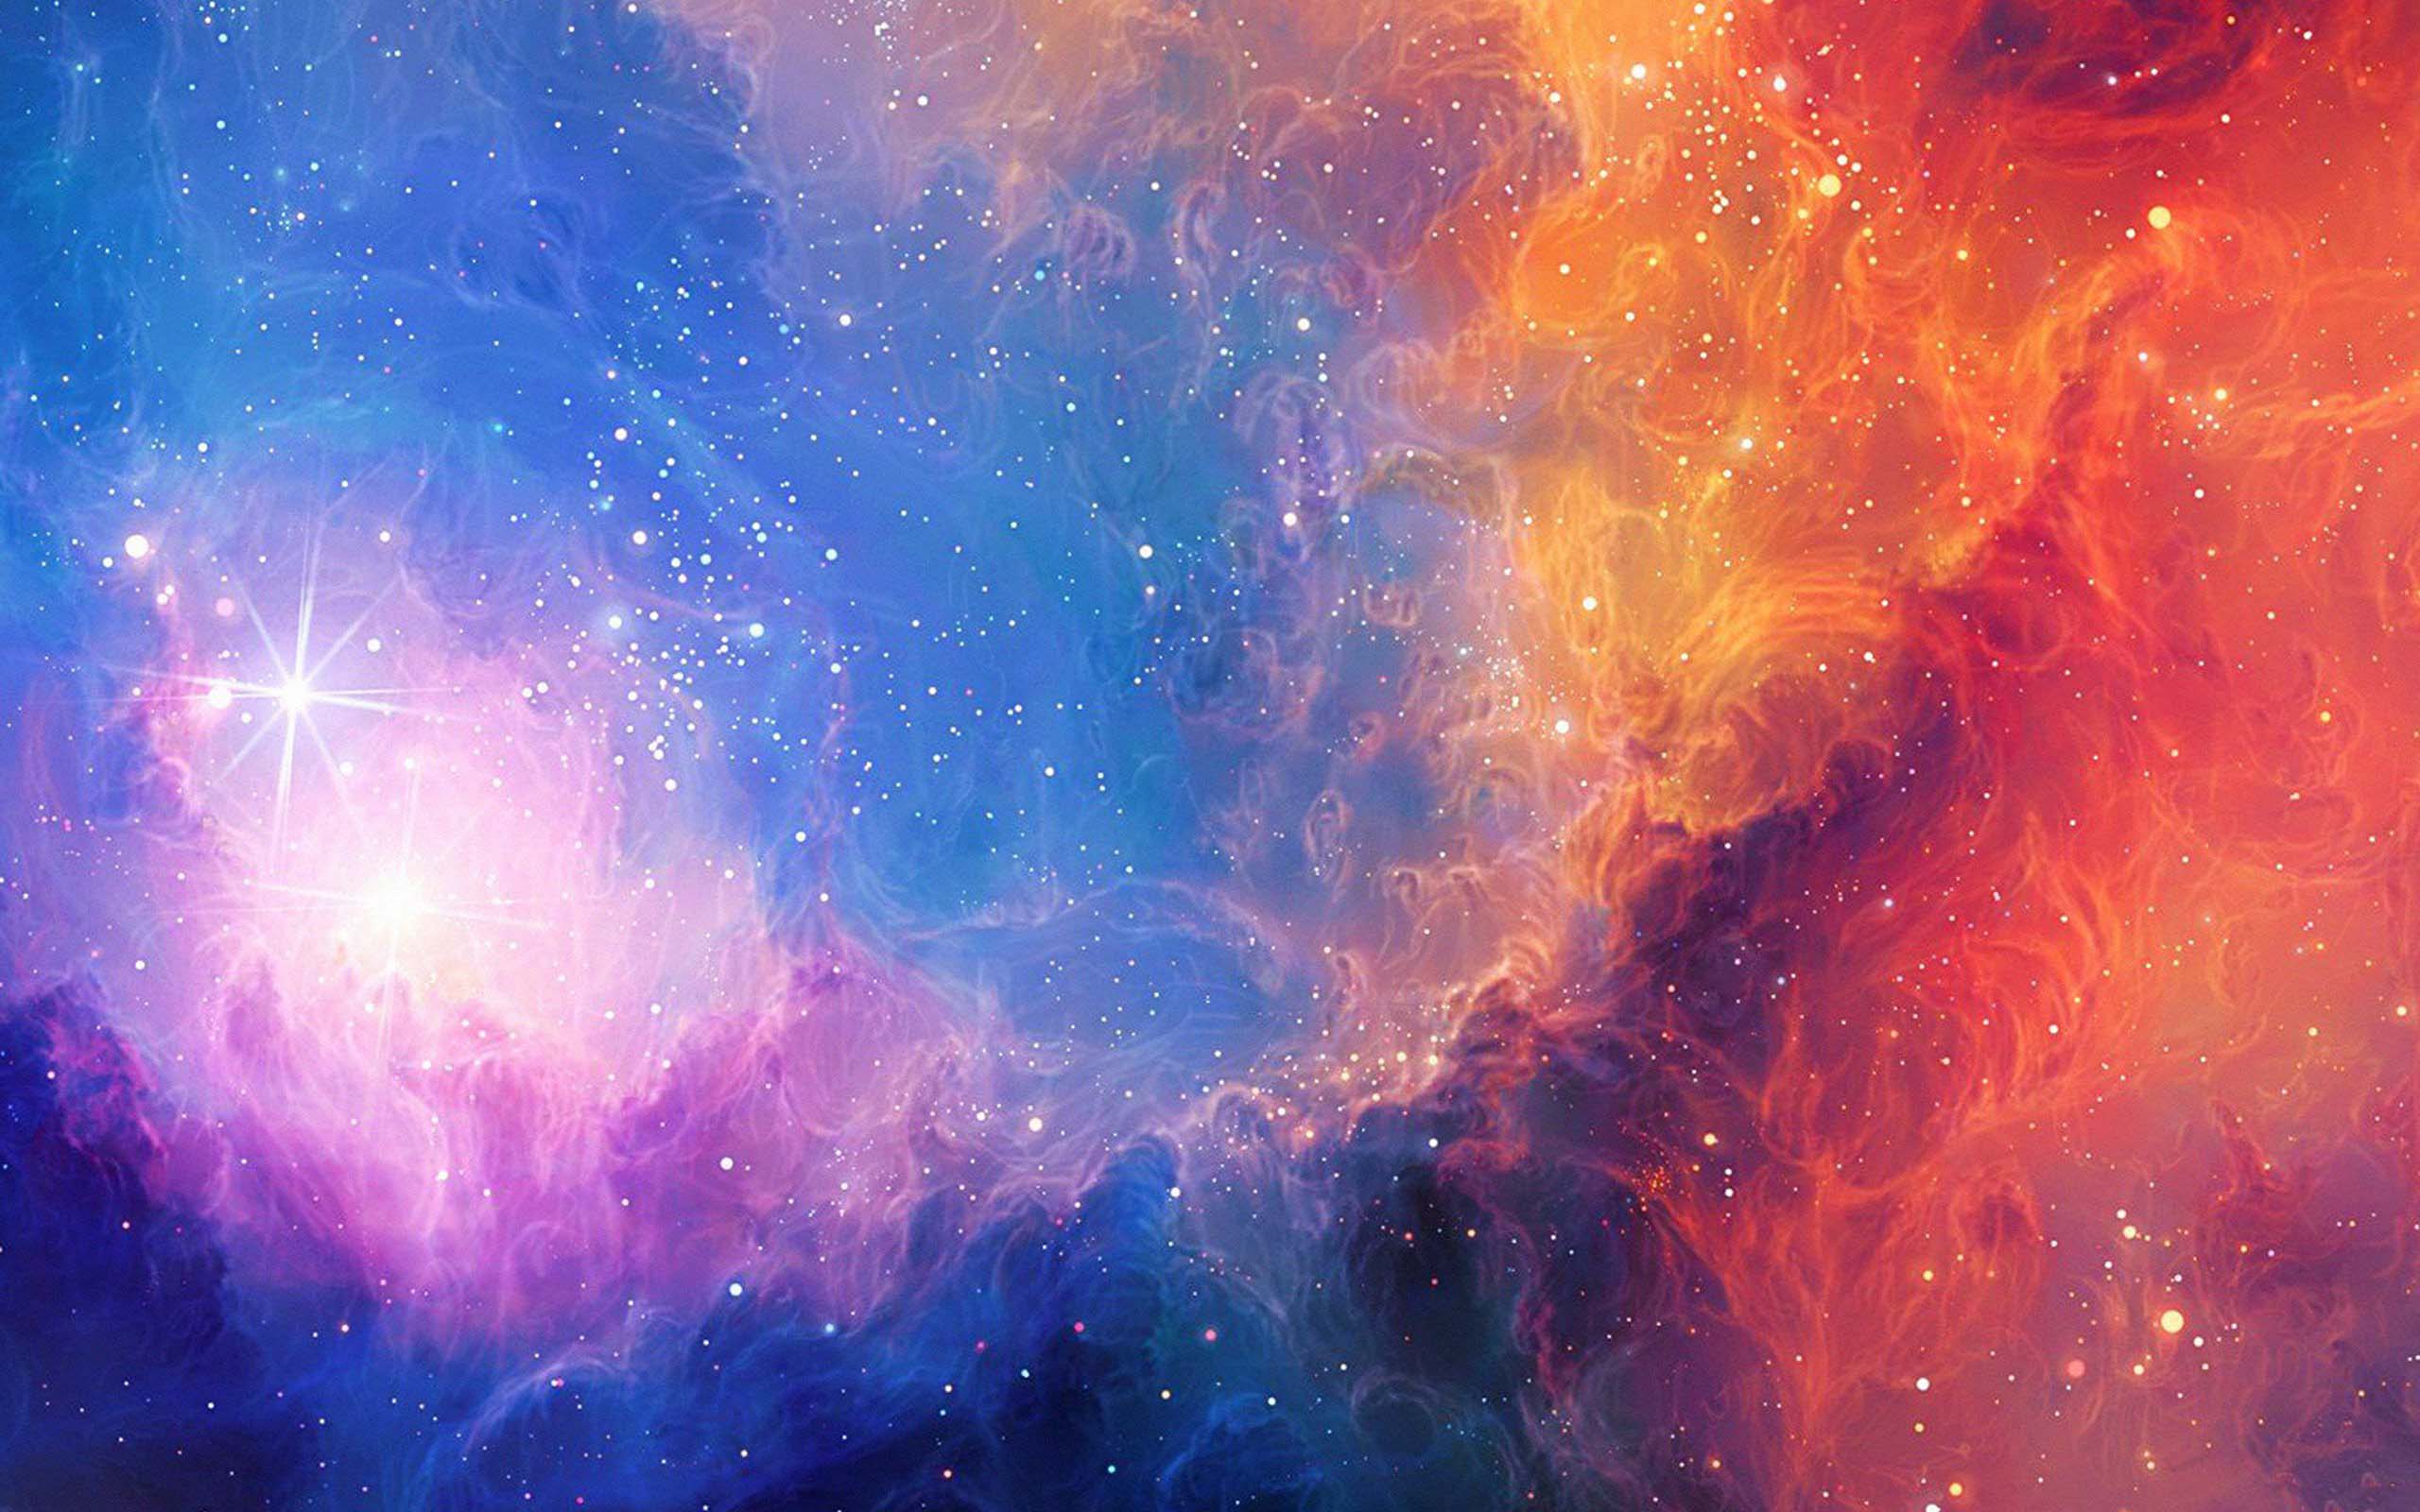 Ảnh miễn phí: Thiên hà Andromeda, Messier 31, M31, sao, vũ trụ, NGC 224,  Thiên hà xoắn ốc | Hippopx